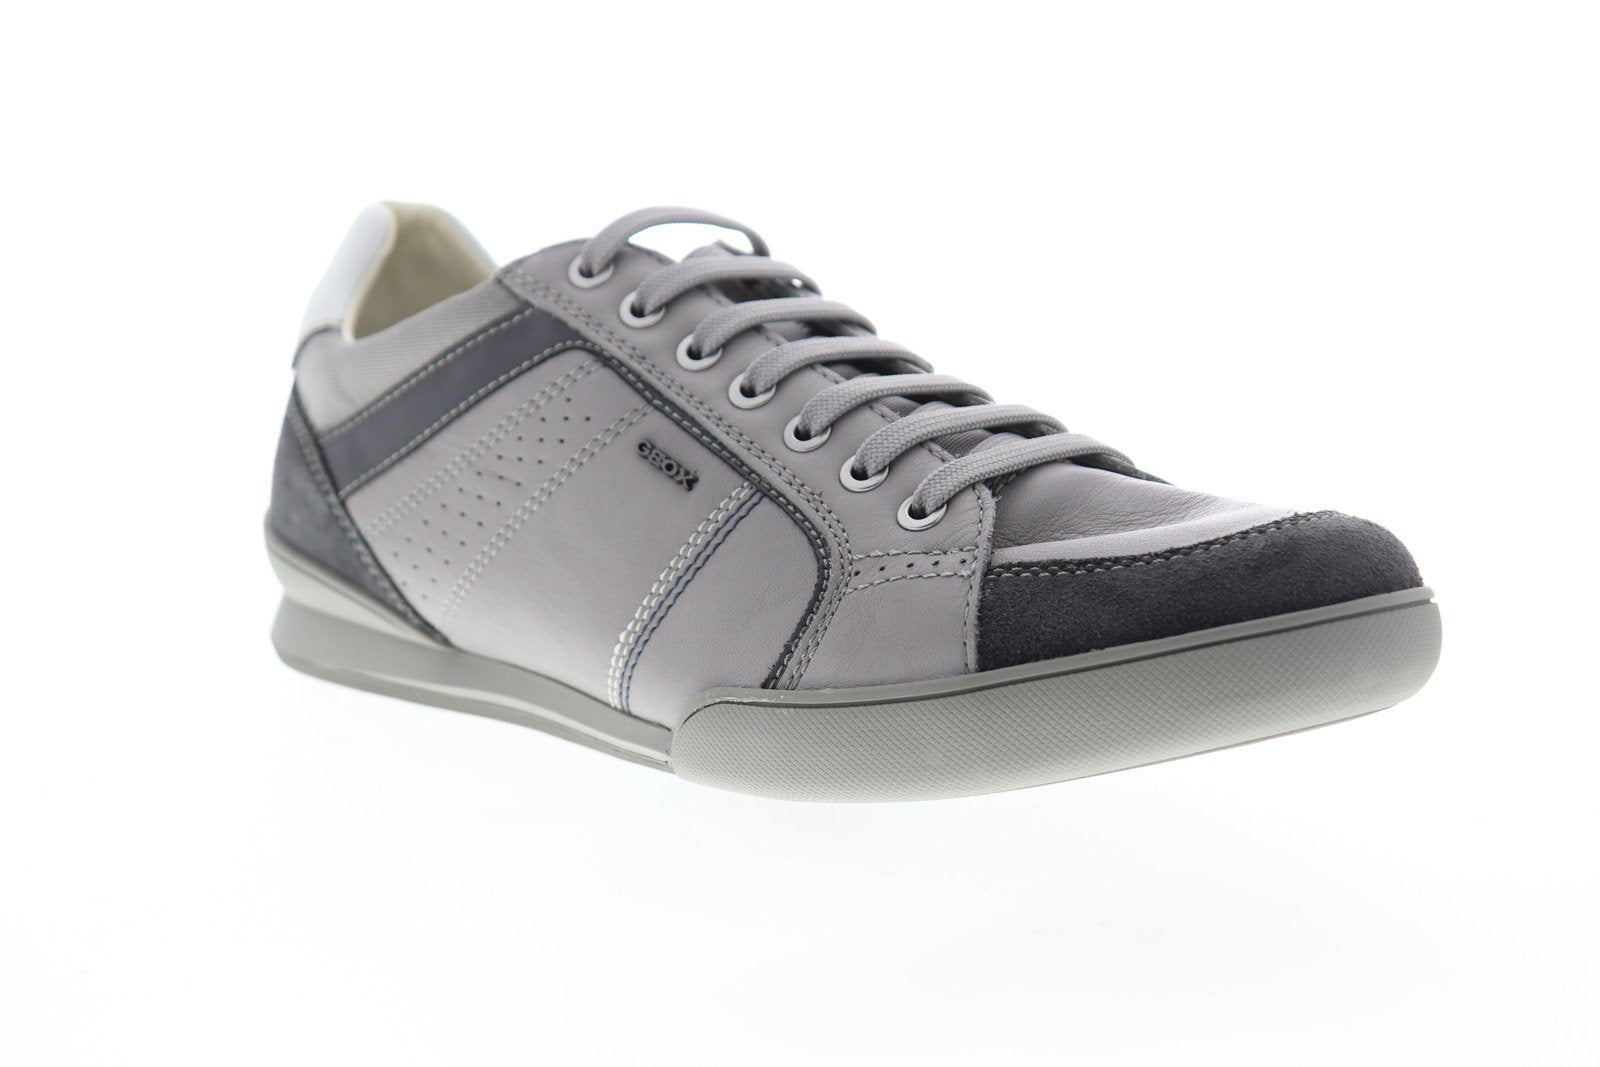 Graan Geslaagd Slijm Geox U Kristof Mens Gray Leather Lace Up Euro Sneakers Shoes - Ruze Shoes